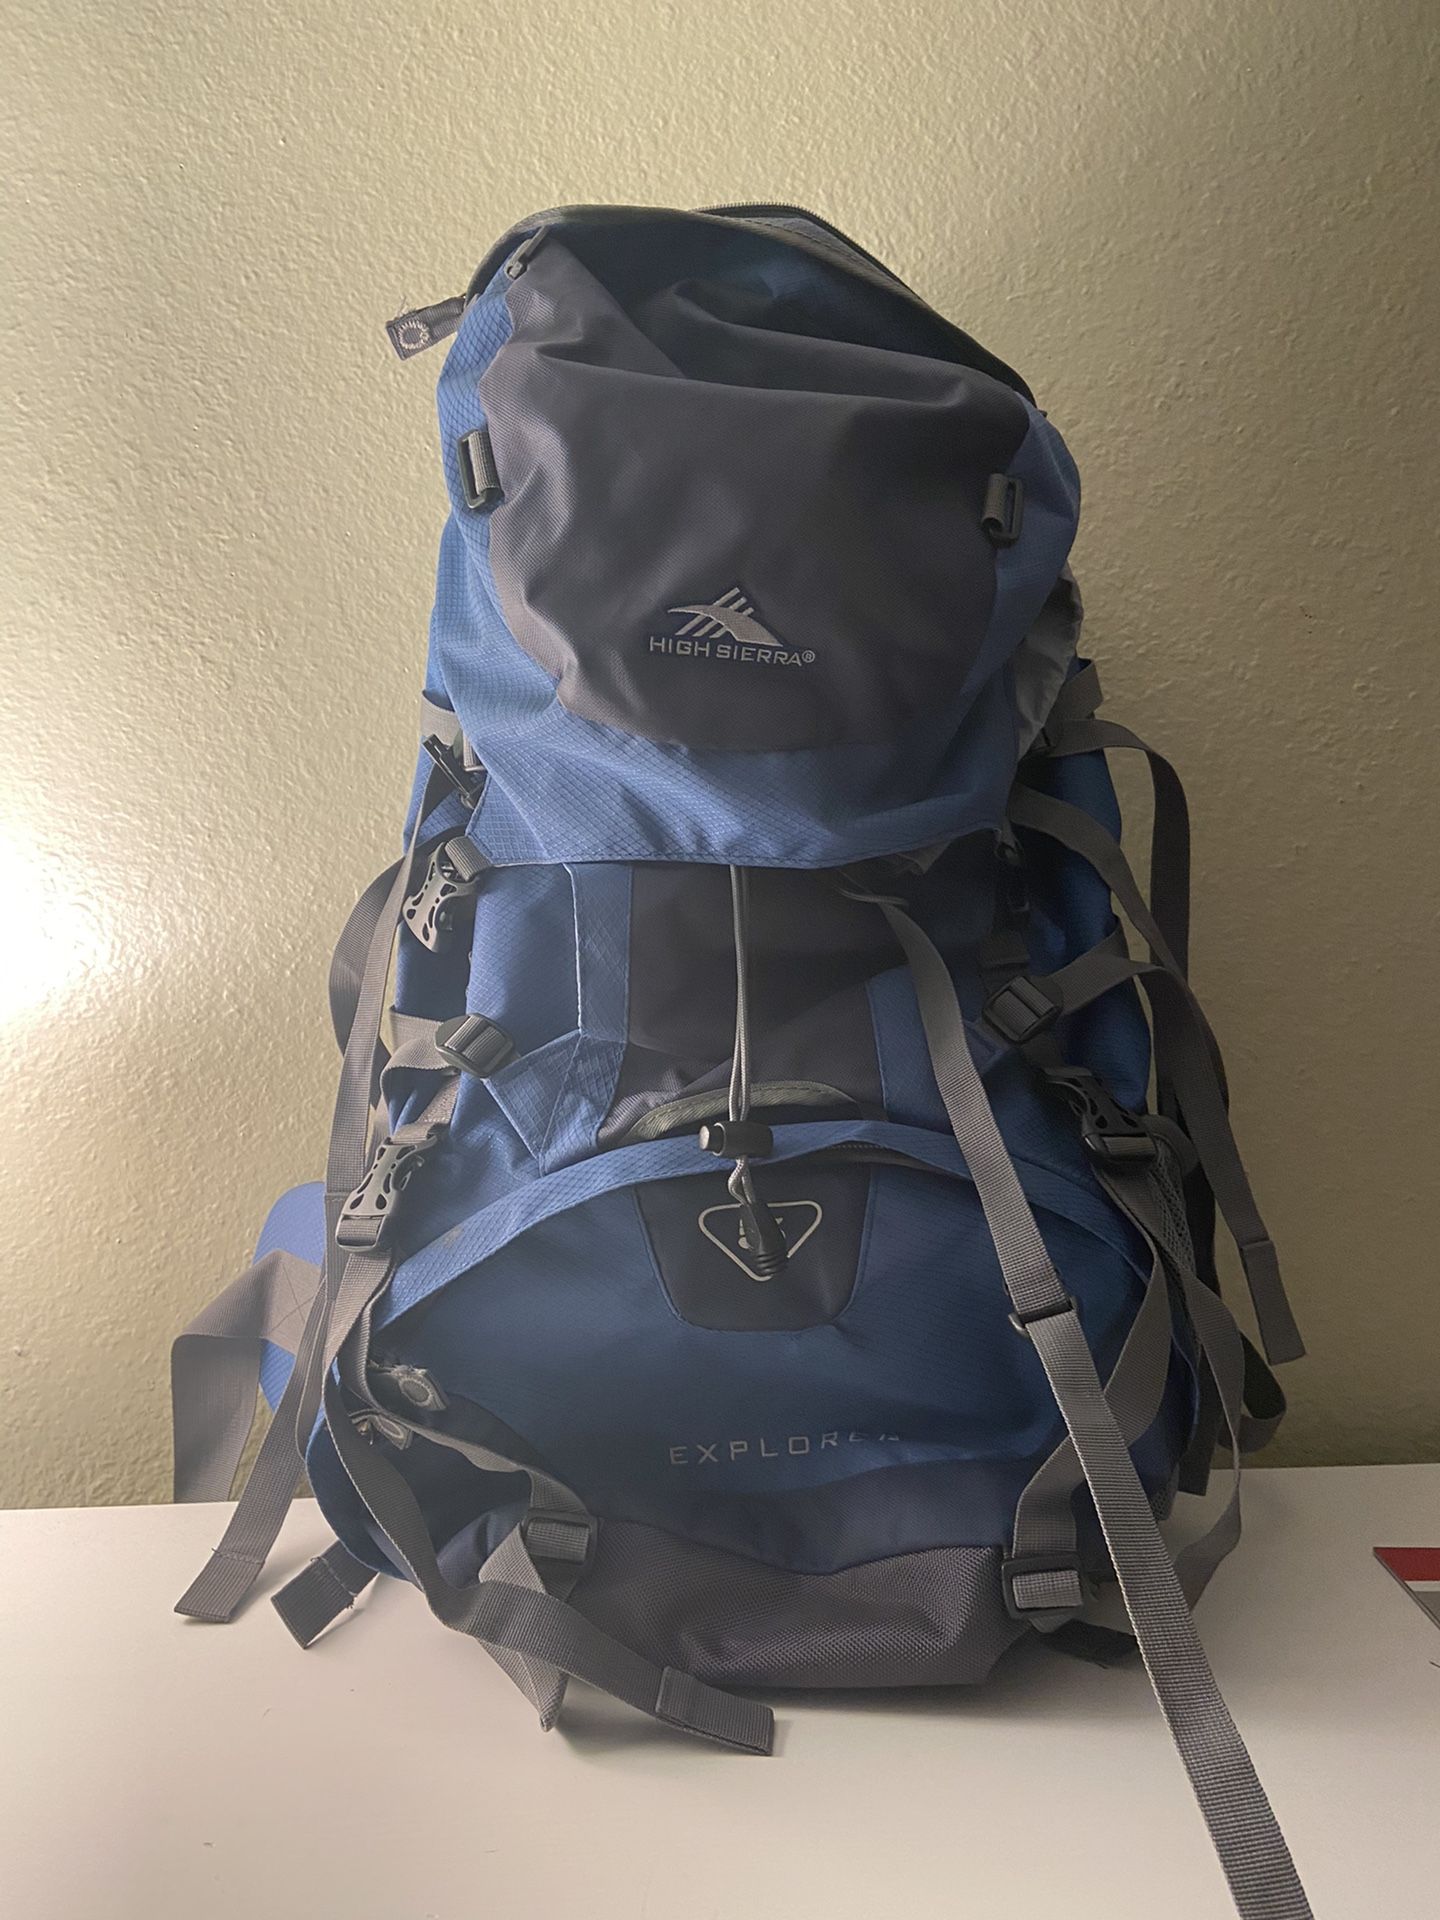 High Sierra Hiking Backpack used once!